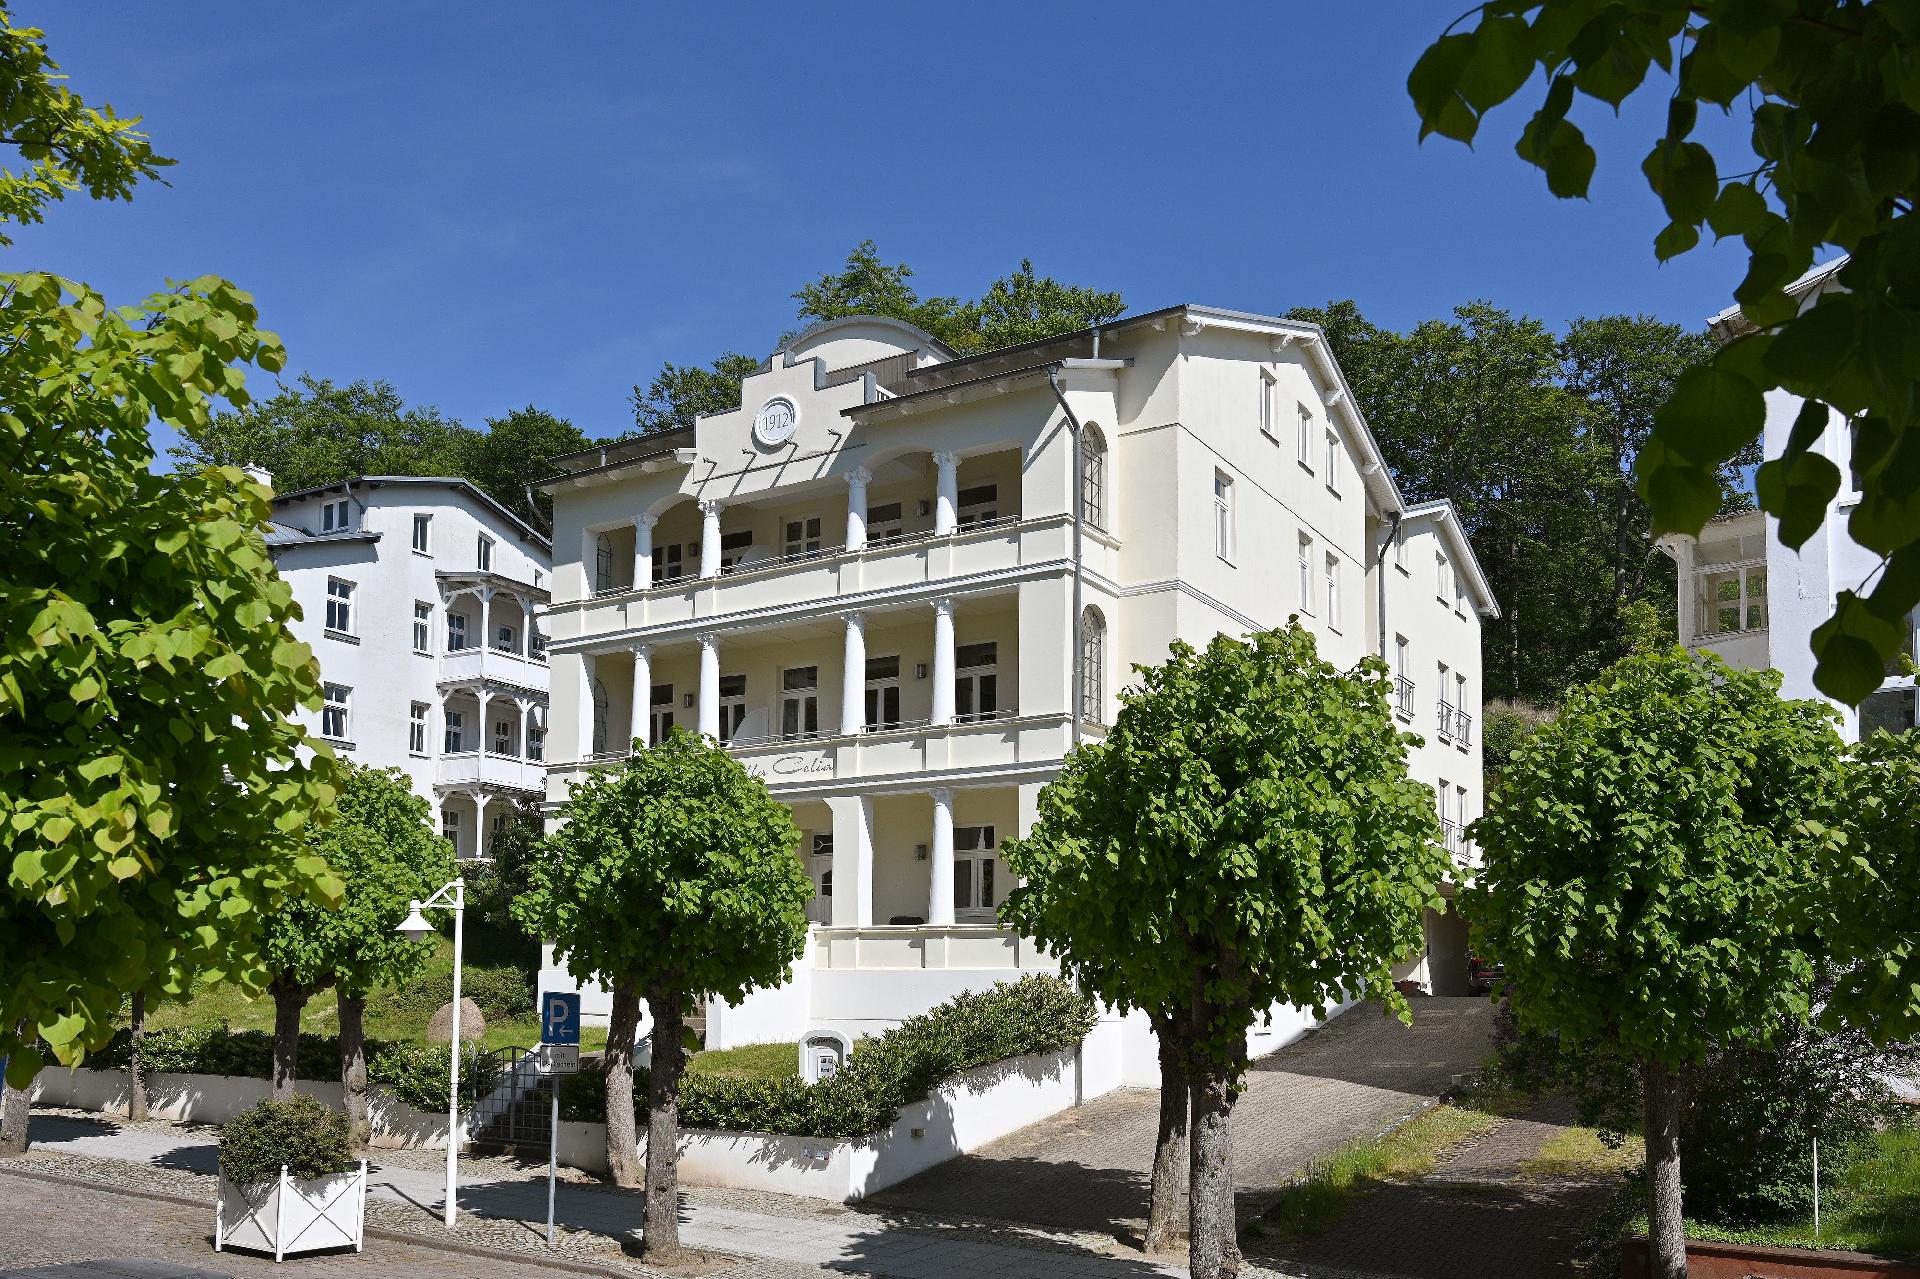 Ferienwohnung für 6 Personen ca. 72 m² i  an der Ostsee